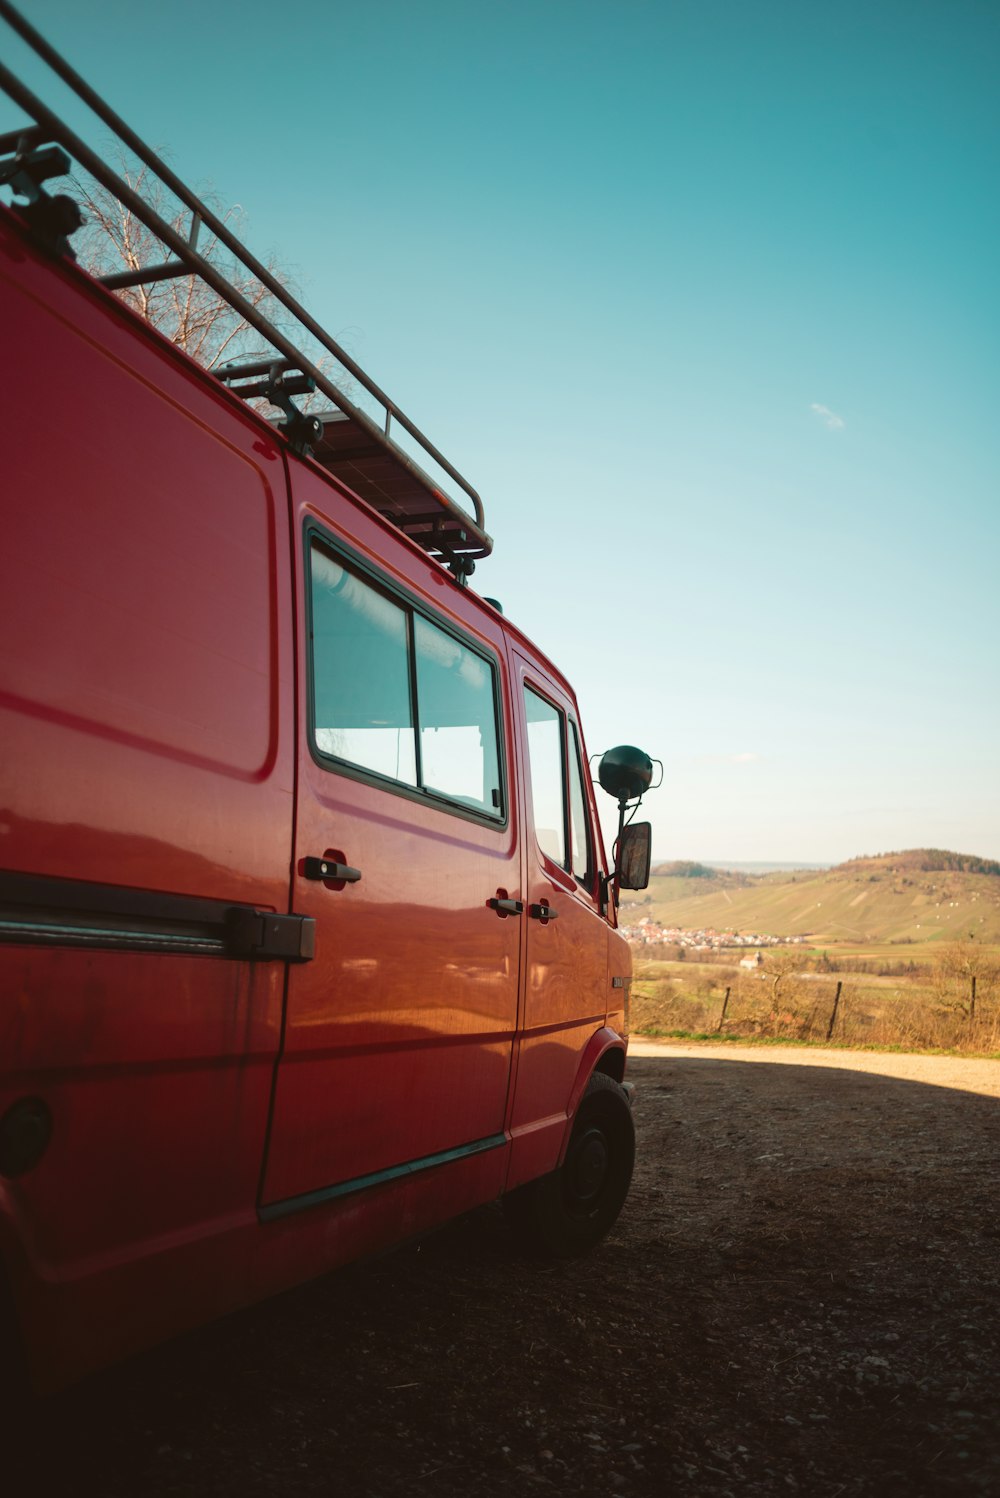 red van on brown dirt road during daytime